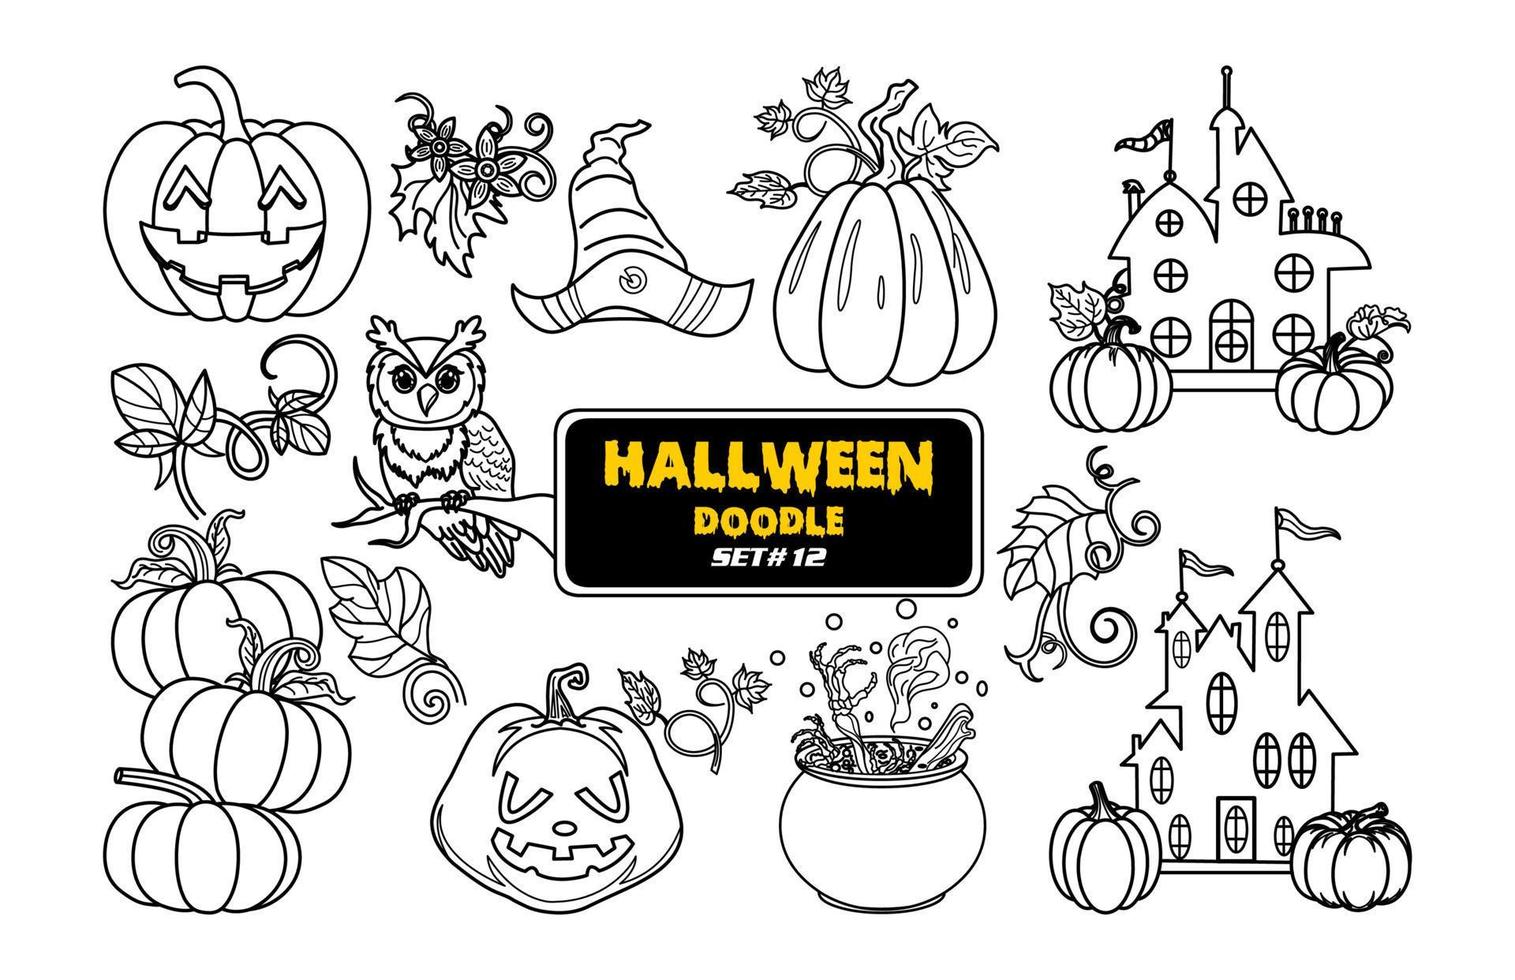 Halloween mano disegnato scarabocchio. carino Halloween digitale francobollo impostare. vettore